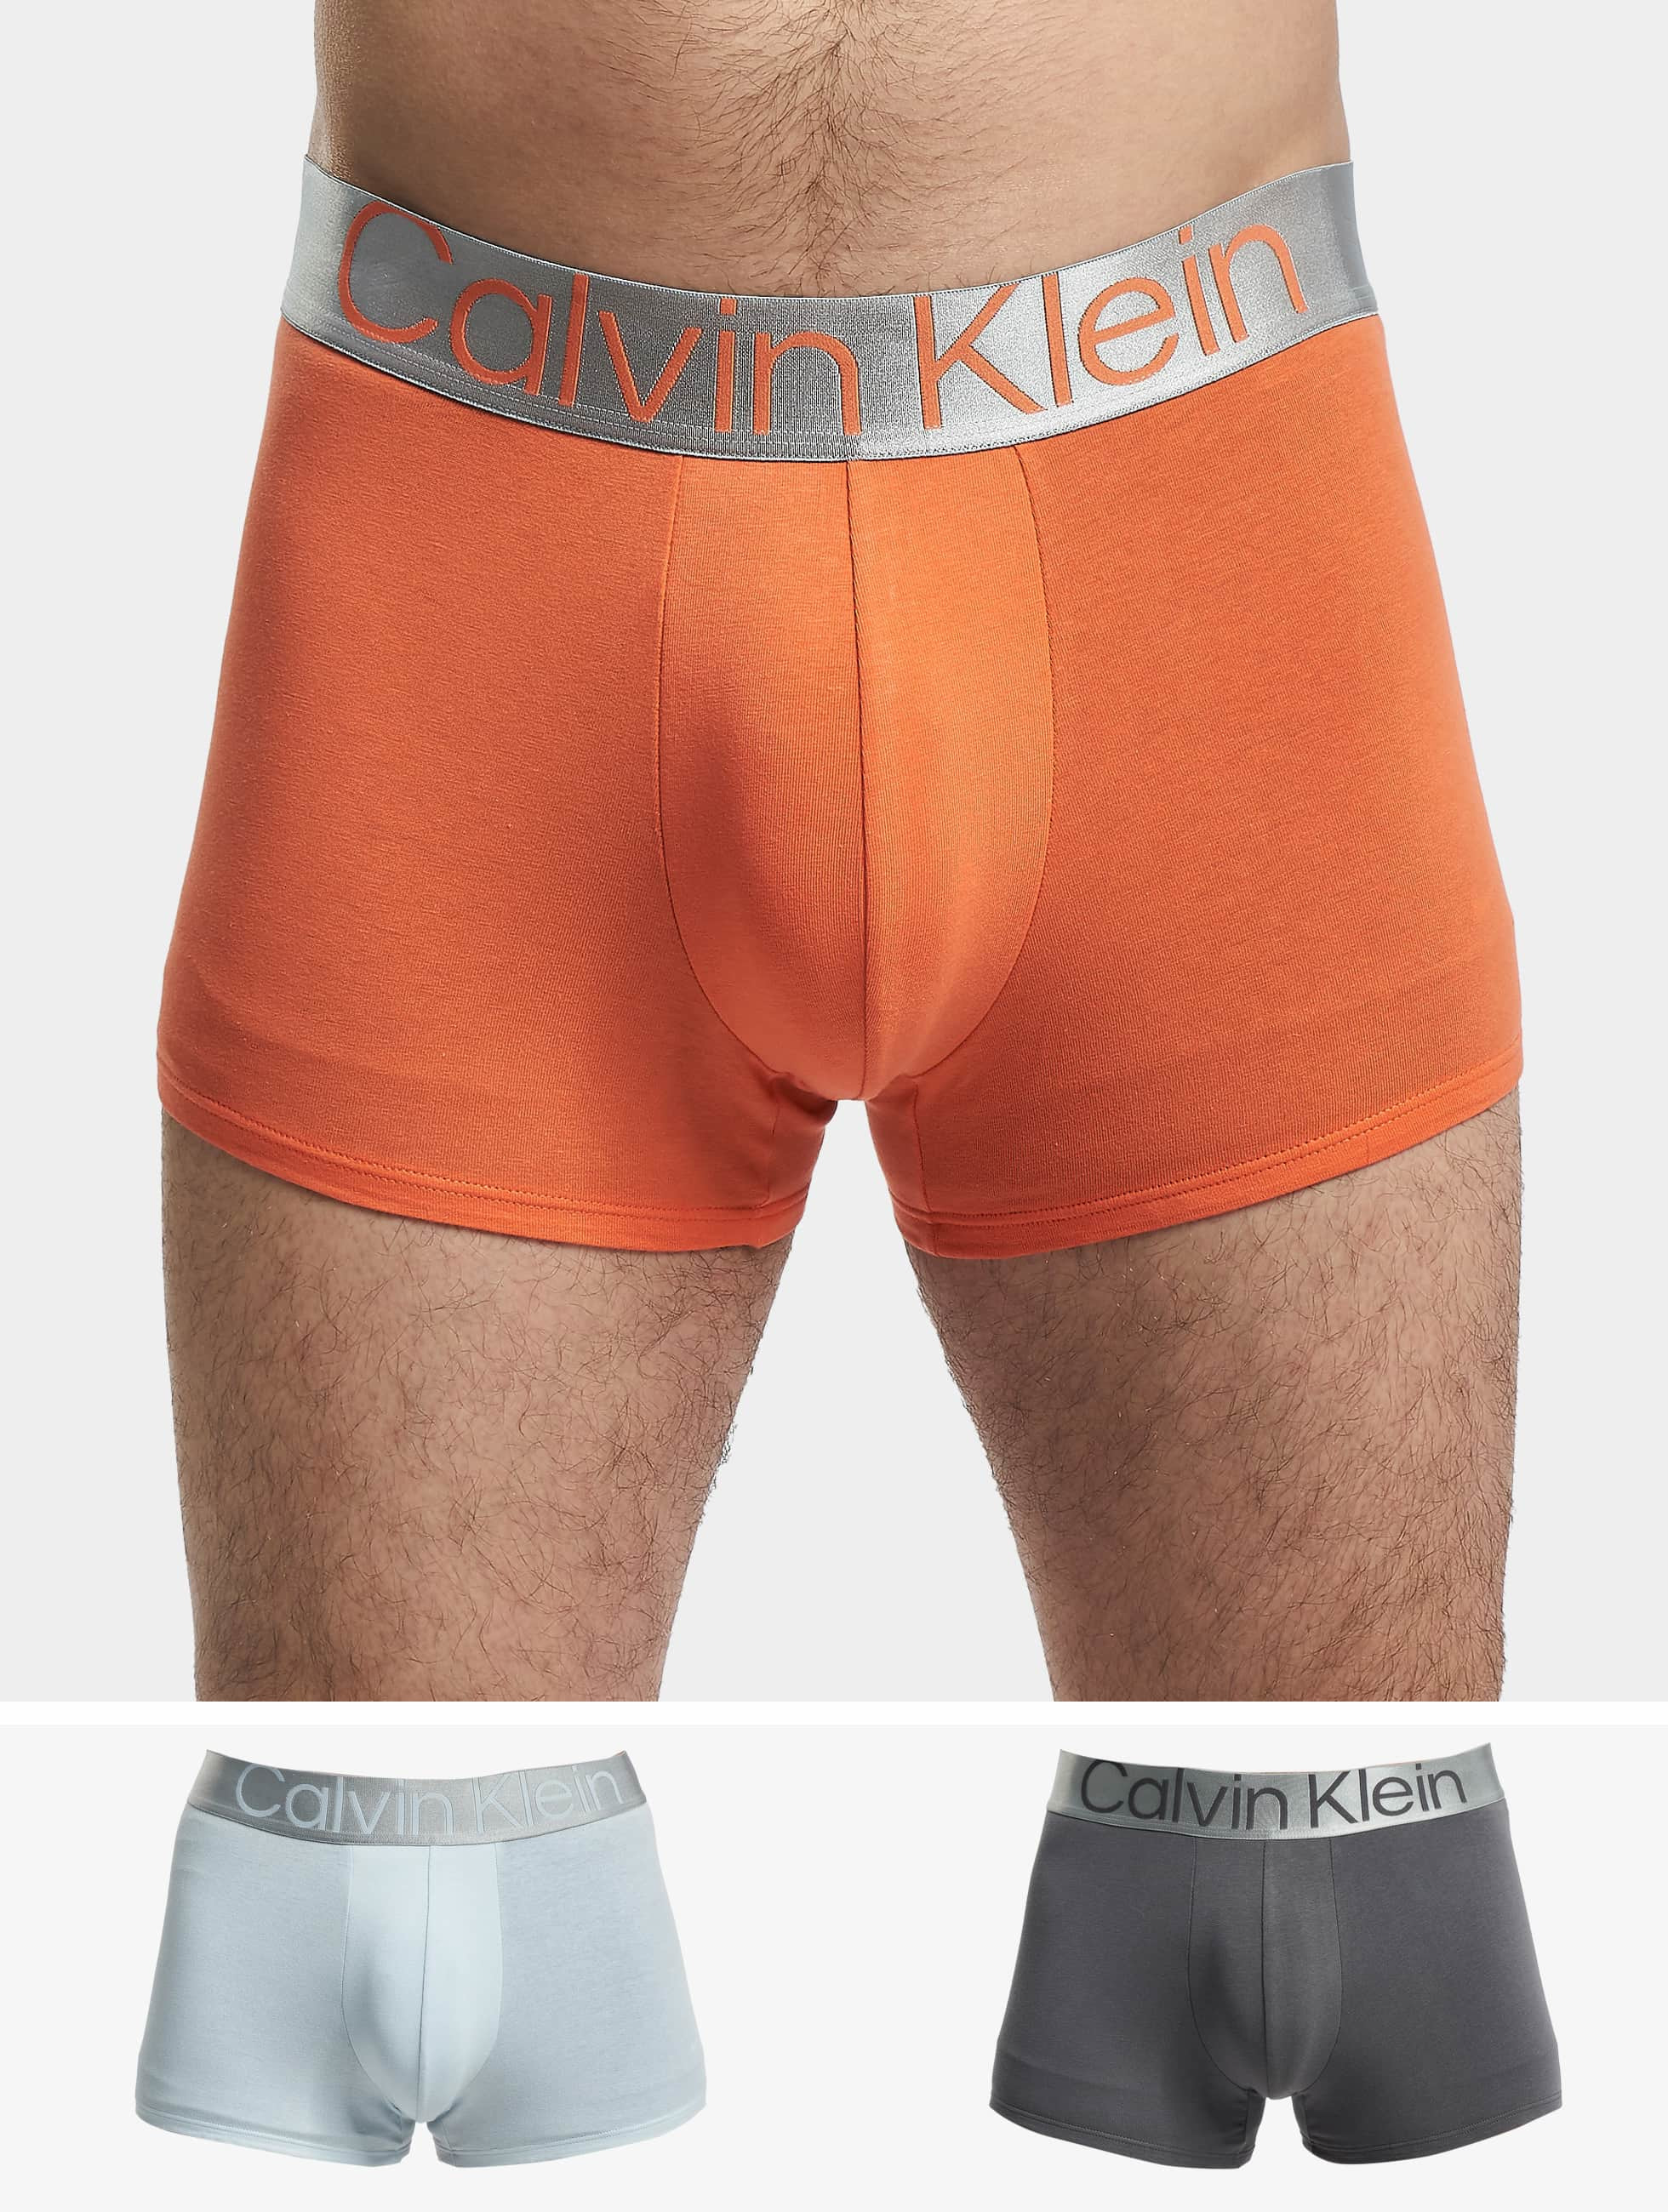 Calvin Klein Underwear / Beachwear / Boxer Short Underwear 3 Pack in orange  972047